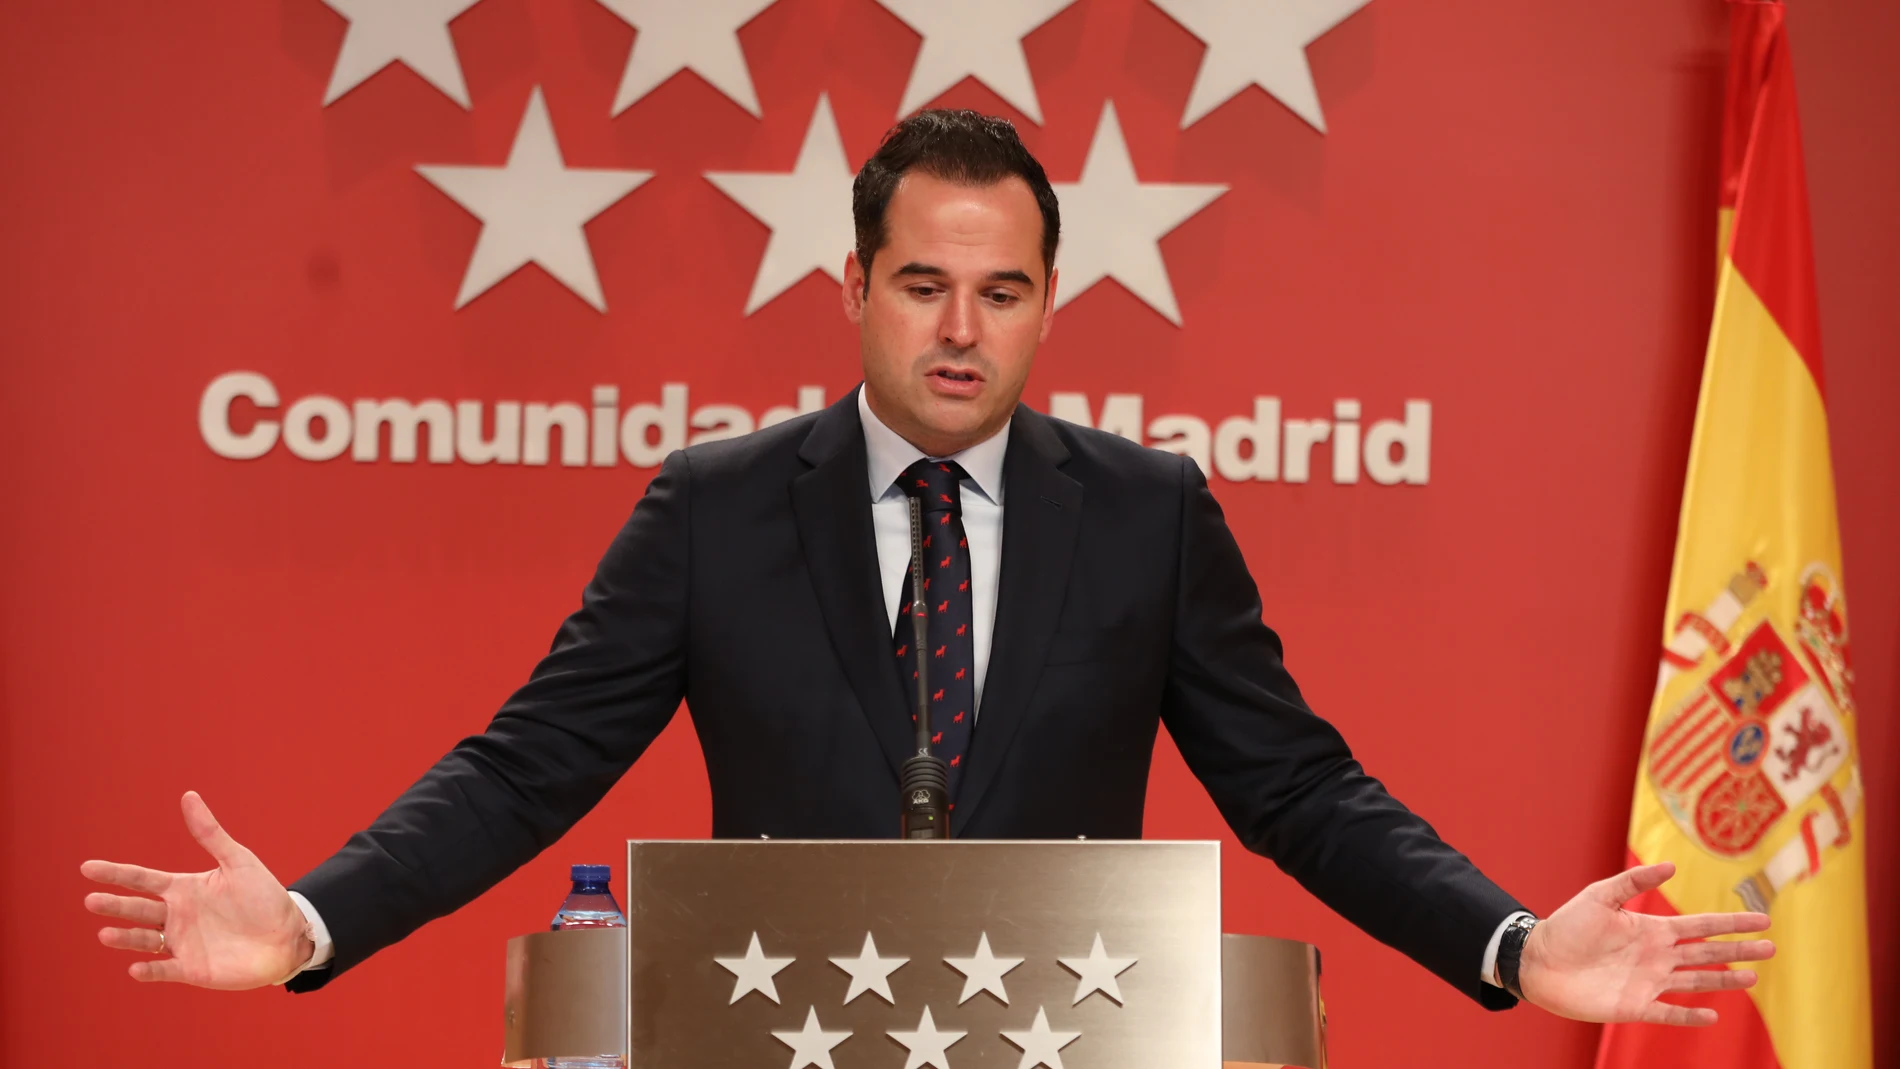 El vicepresidente, consejero de Deportes, Transparencia y portavoz de la Comunidad de Madrid, Ignacio Aguado